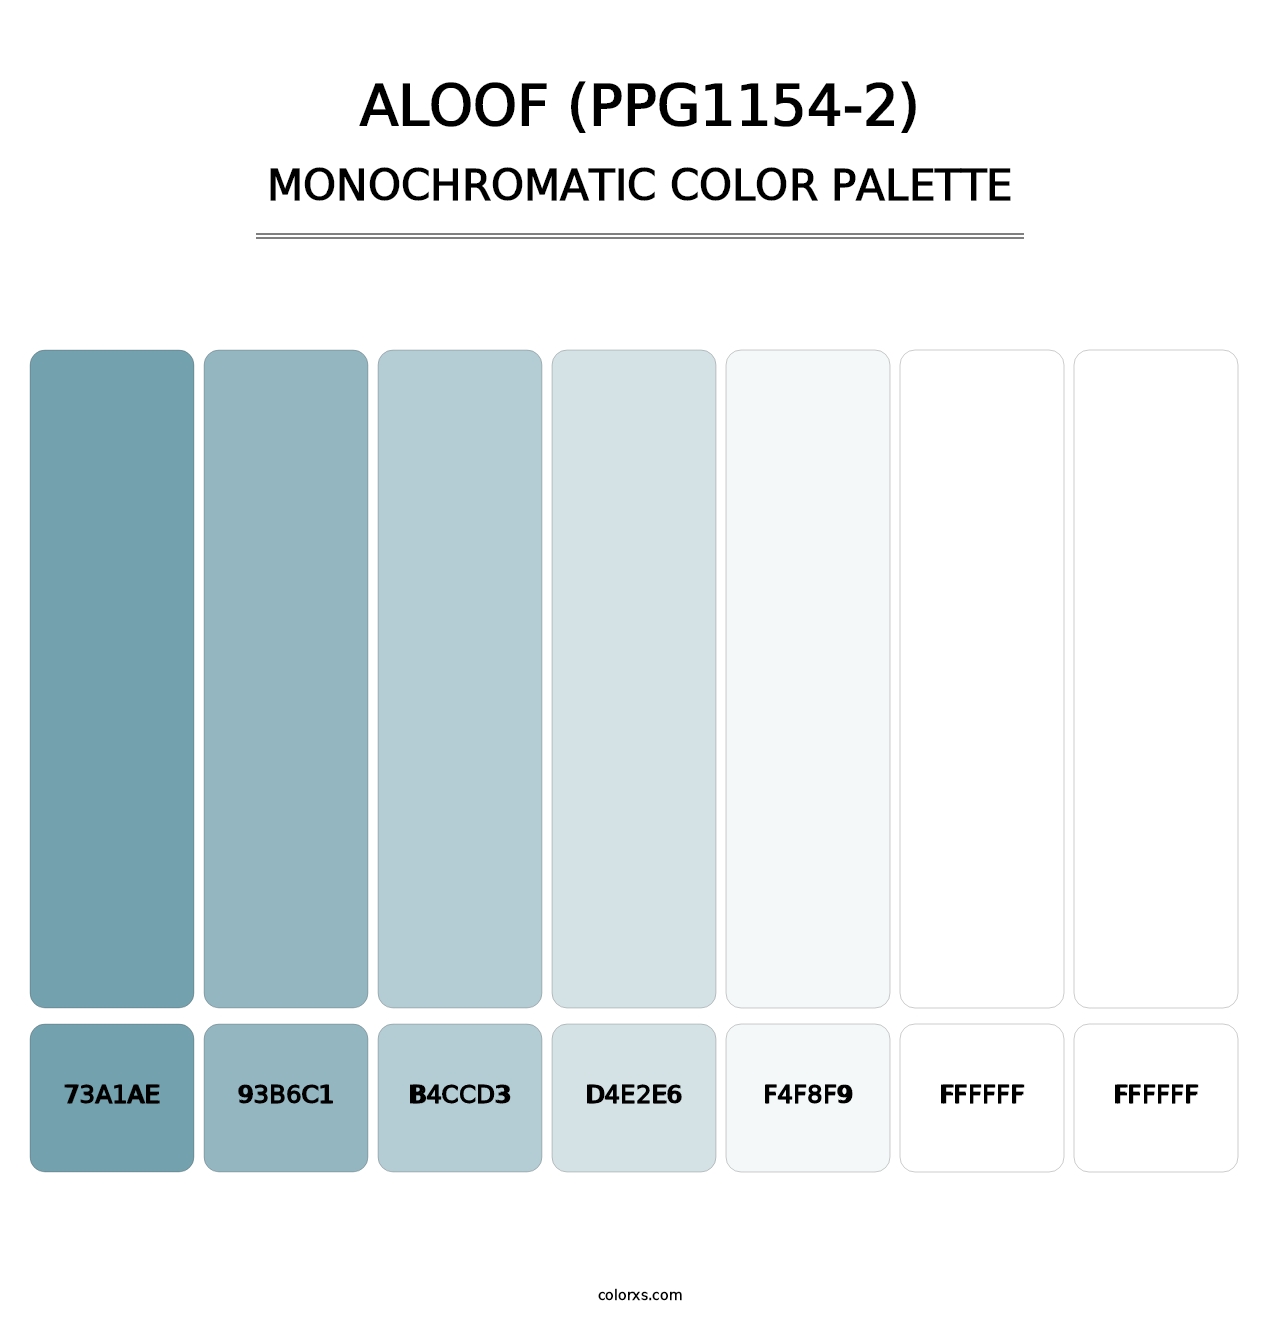 Aloof (PPG1154-2) - Monochromatic Color Palette